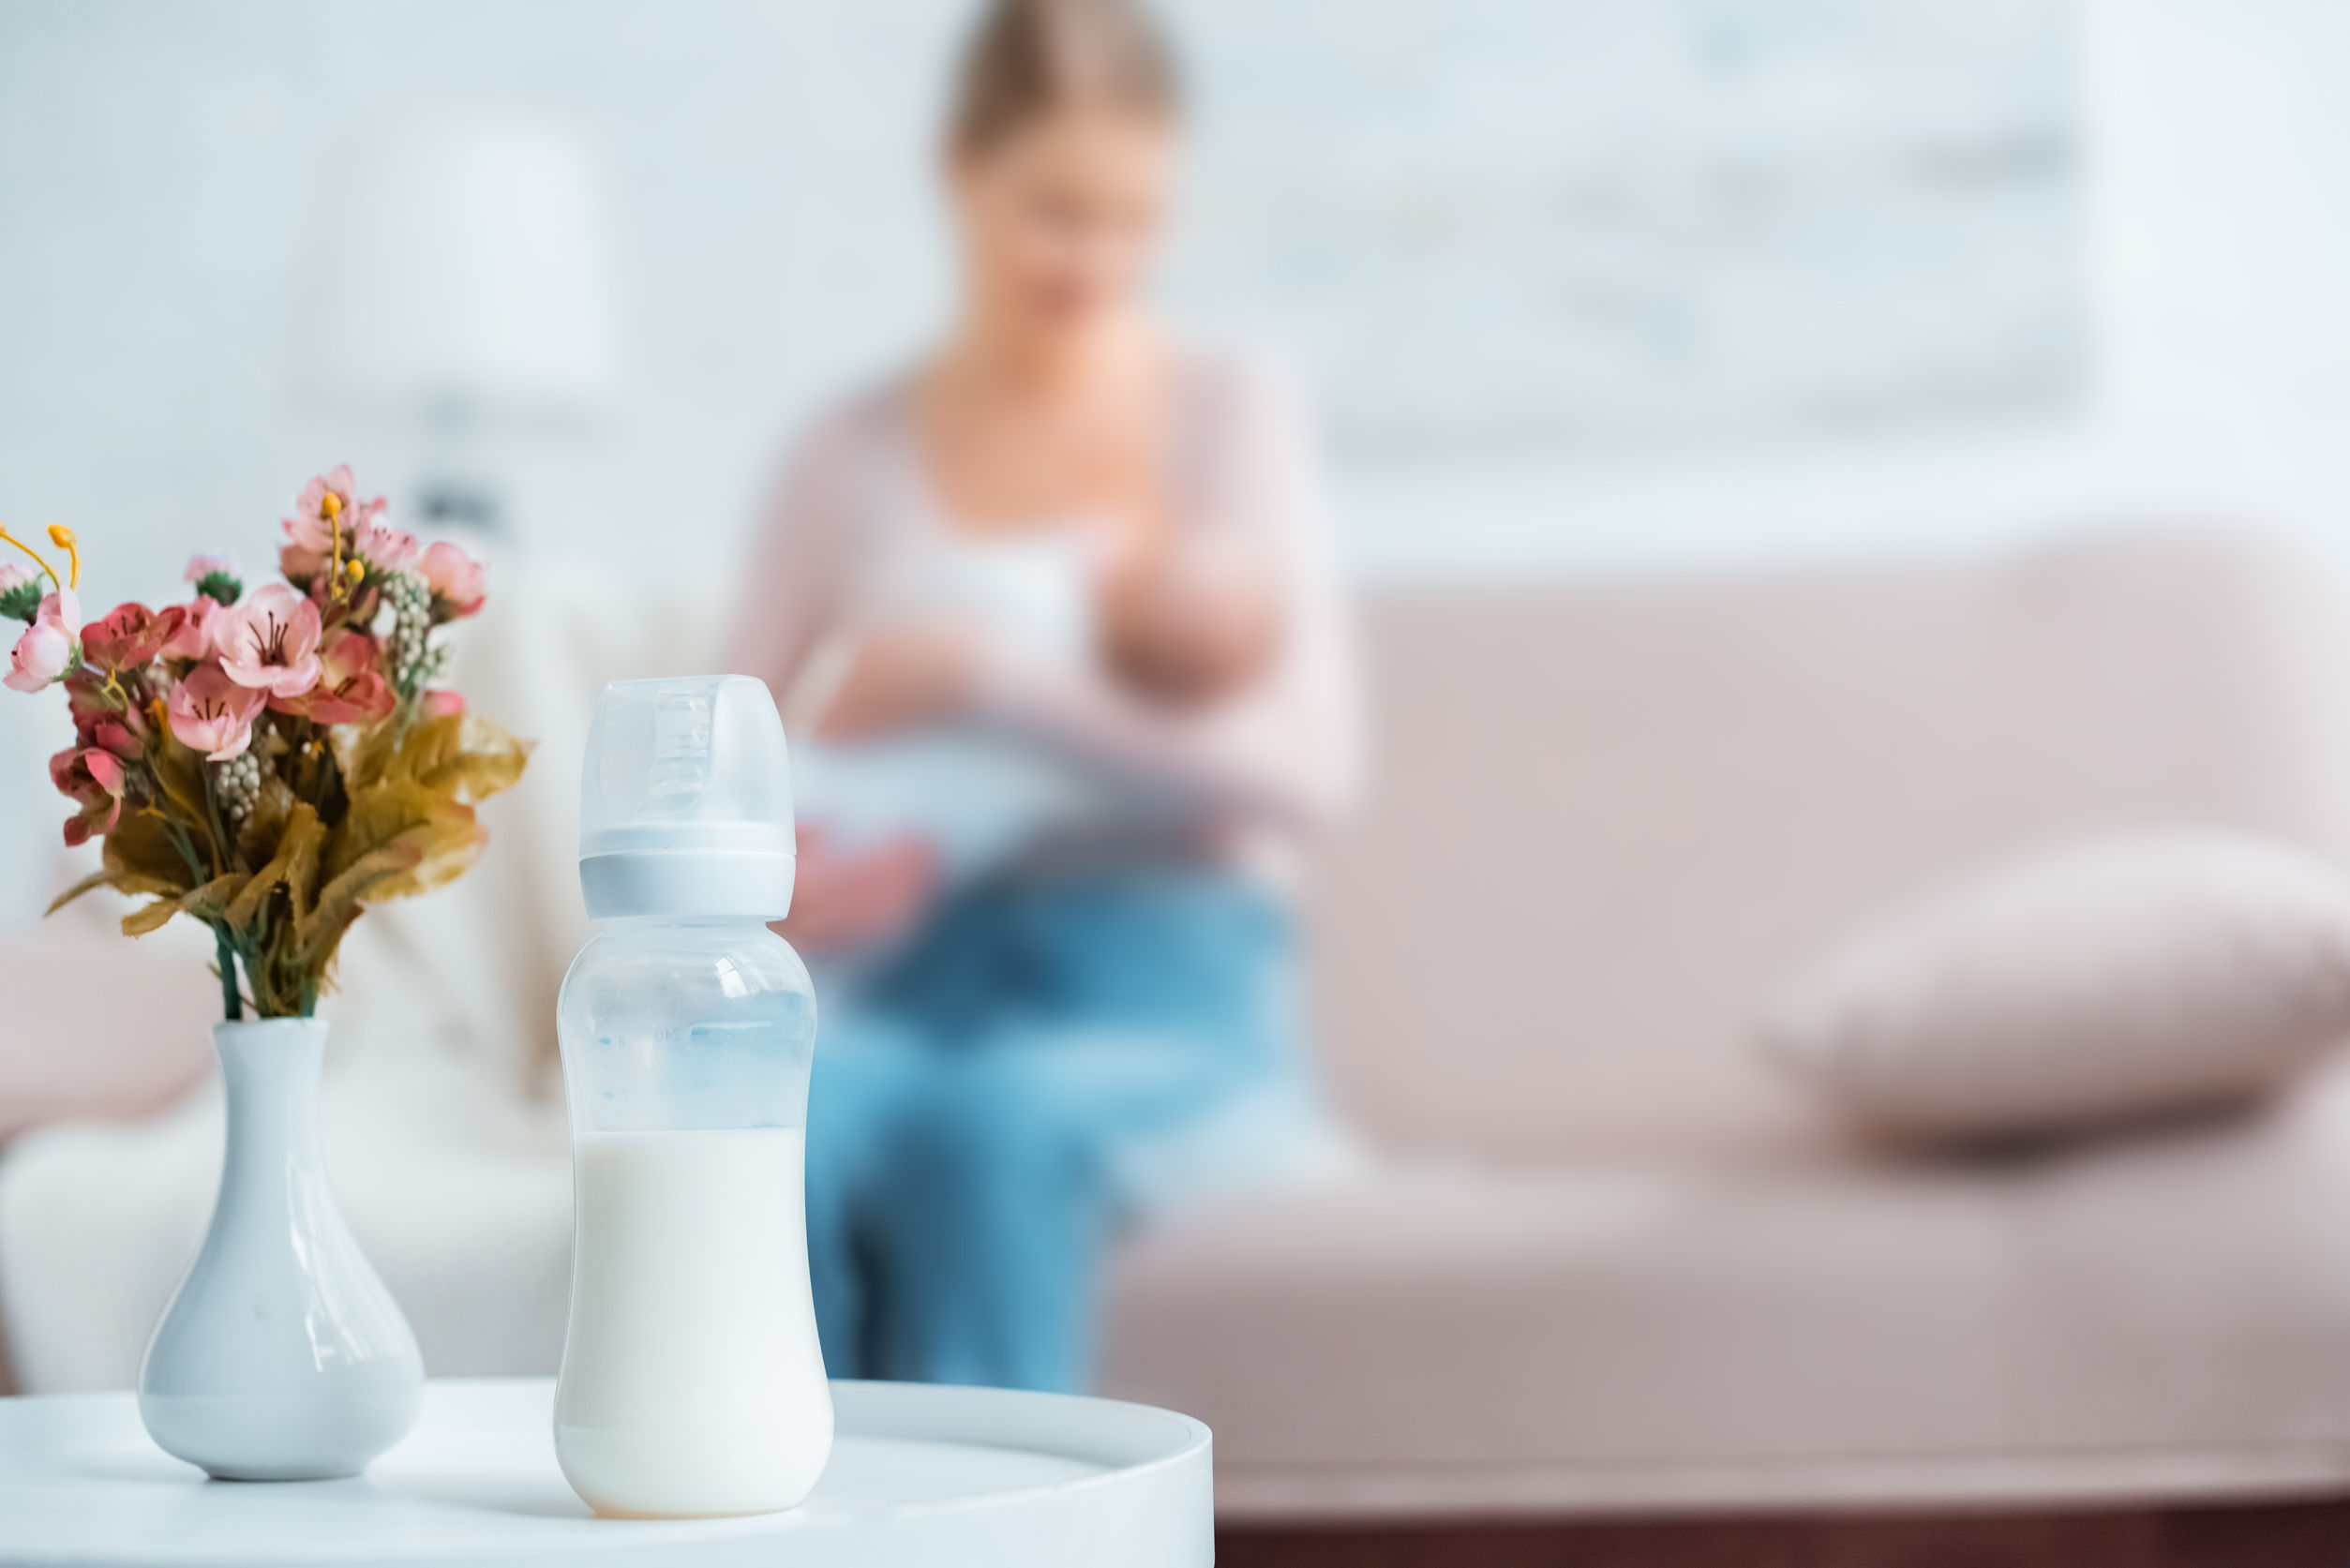 相片顯示了一樽裝著母乳的膠瓶，後方有一位母親正在餵哺母乳。